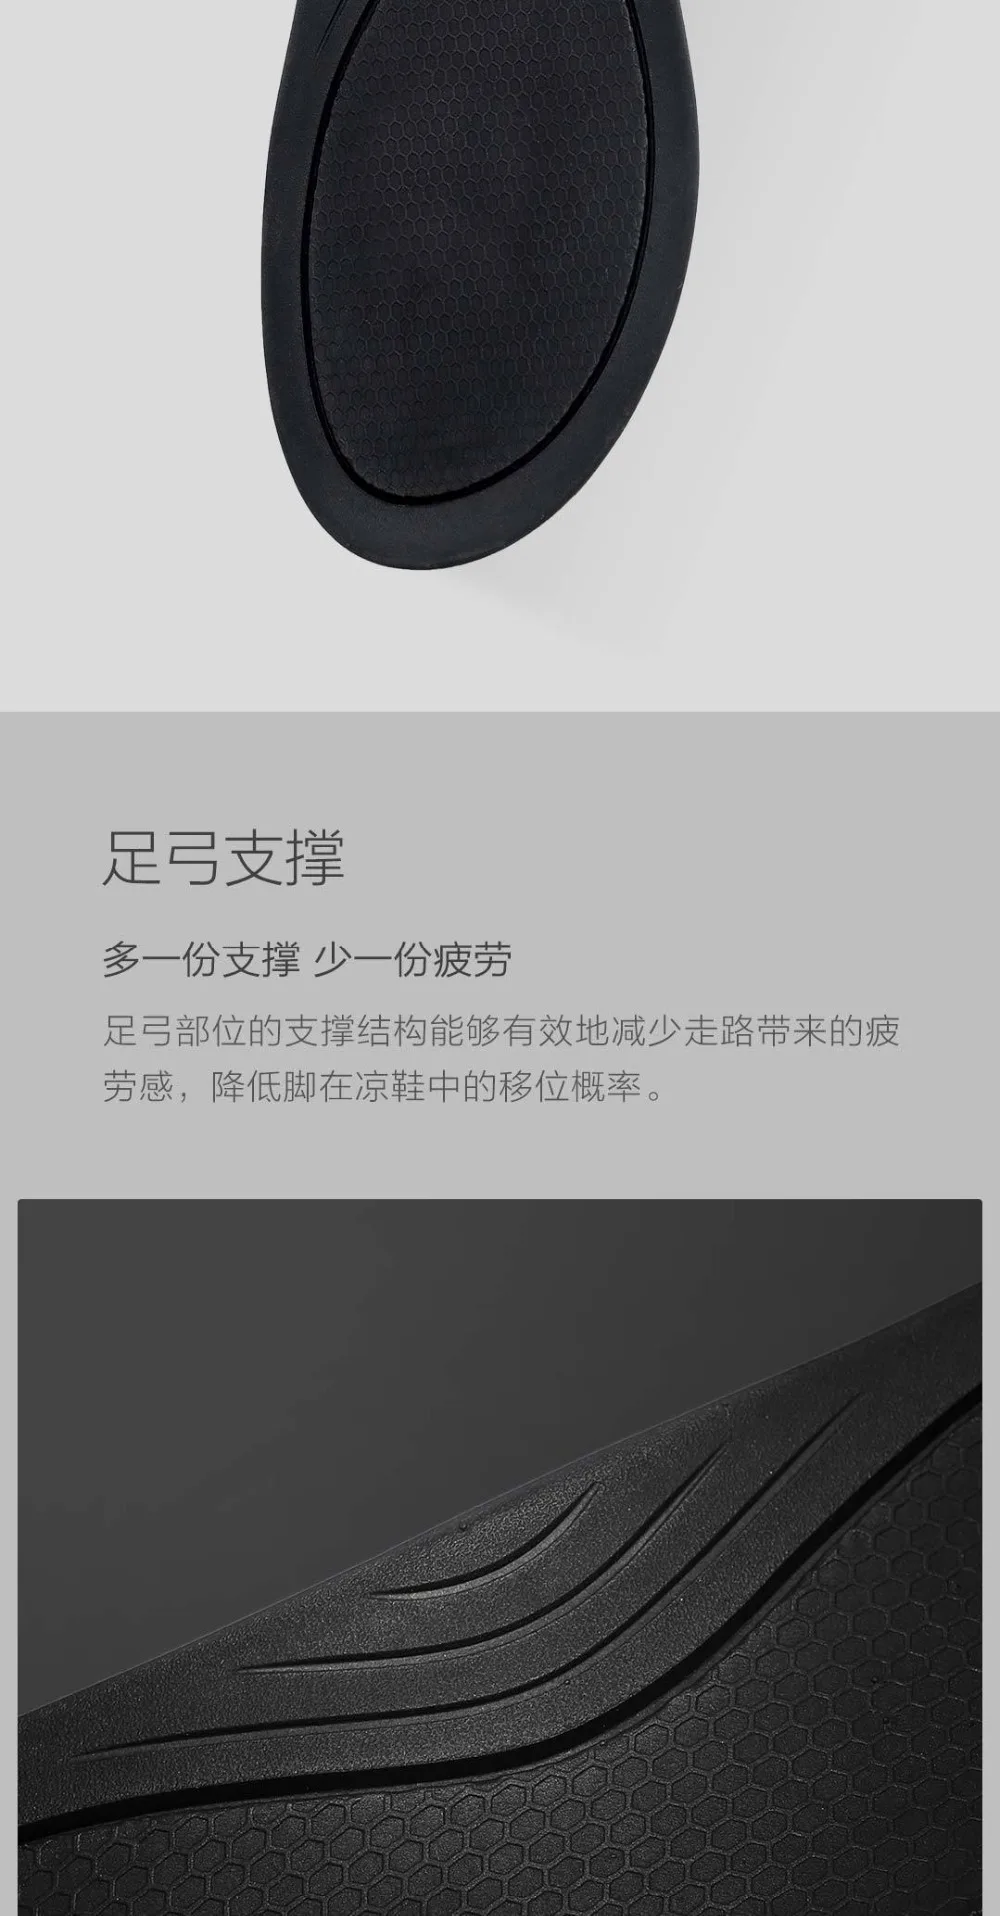 2 цвета; Xiaomi Youpin; изогнутые босоножки с волшебным ремешком; нескользящие износостойкие сандалии с бесплатной пряжкой; подходят для весны и весны; Aummer Smart